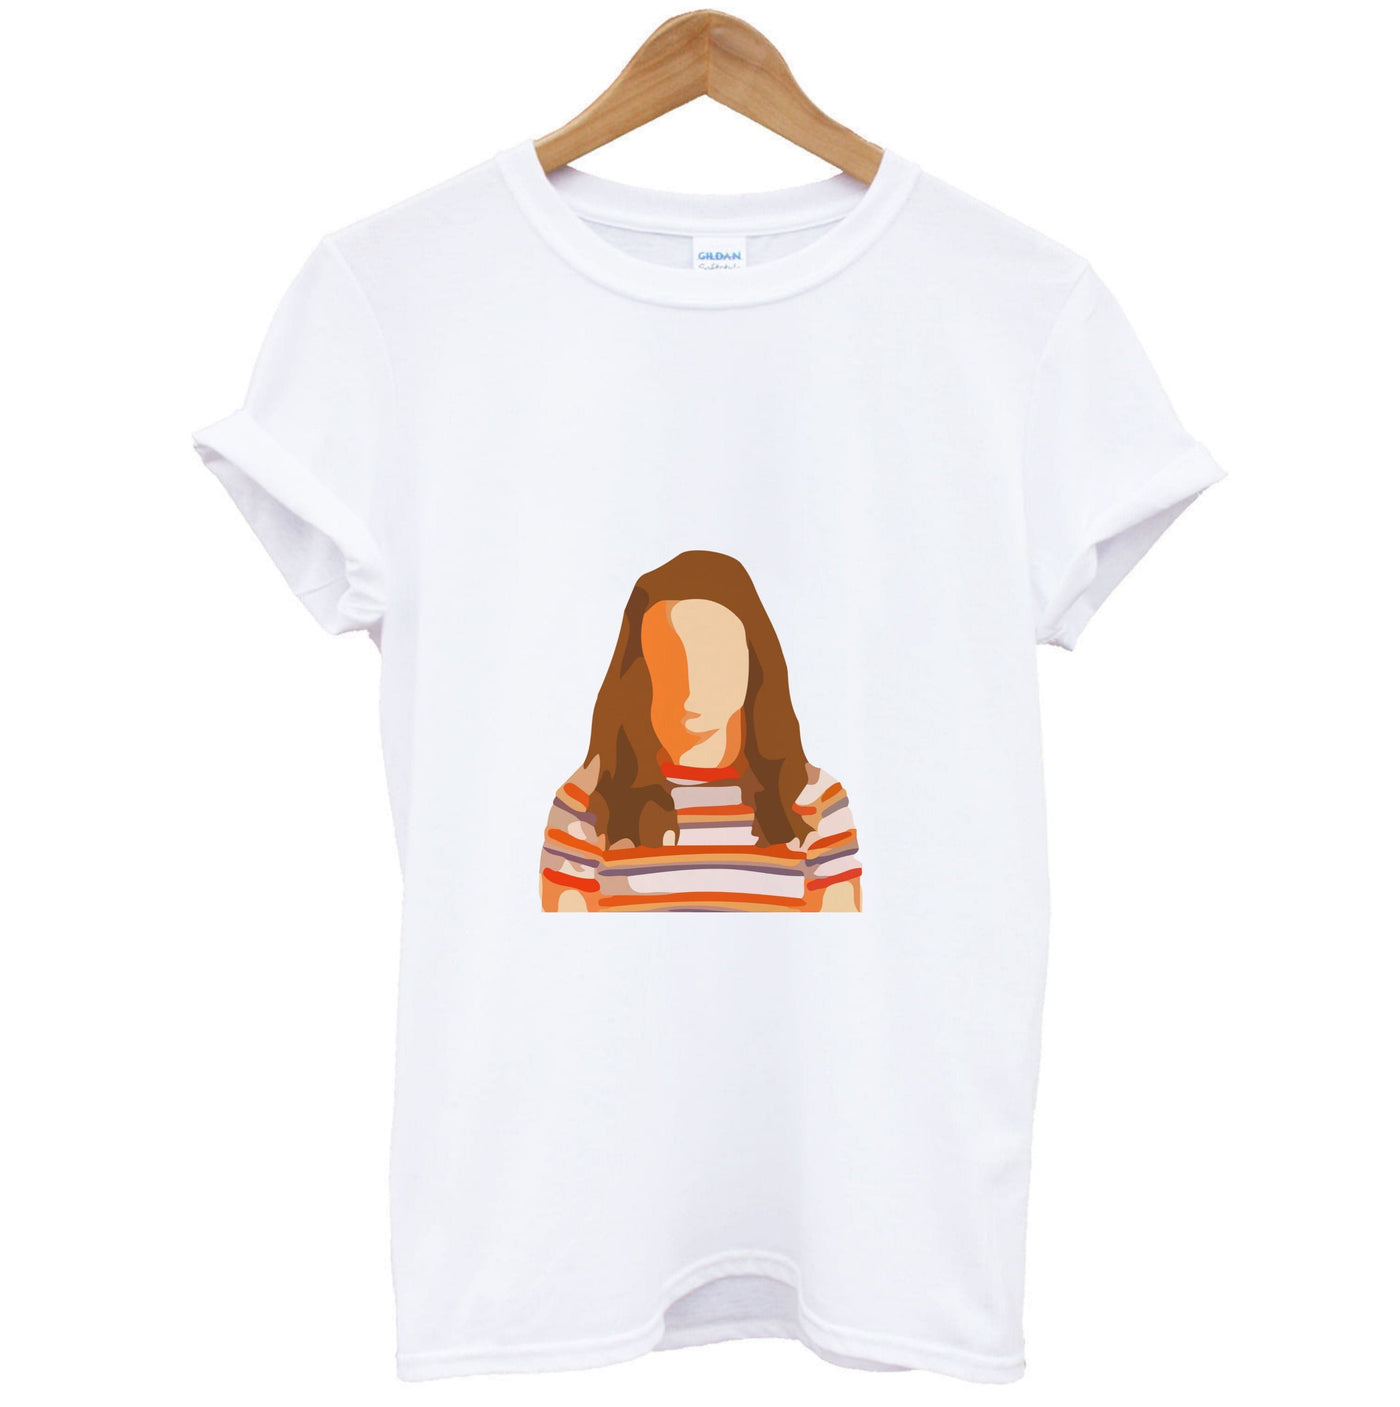 Nancy Faceless - Stranger Things T-Shirt